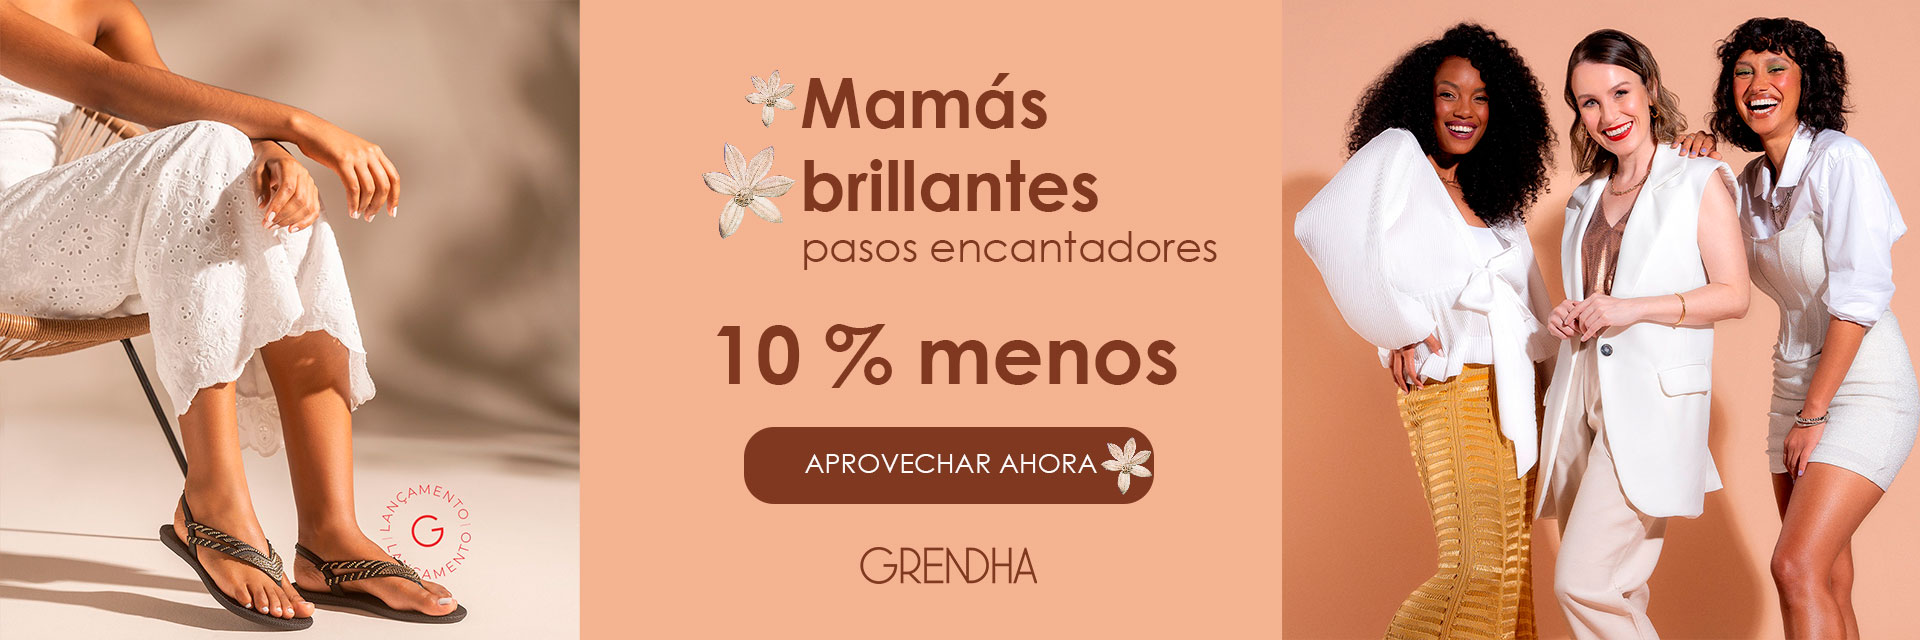 GRENDHA - DIA DE LAS MADRES